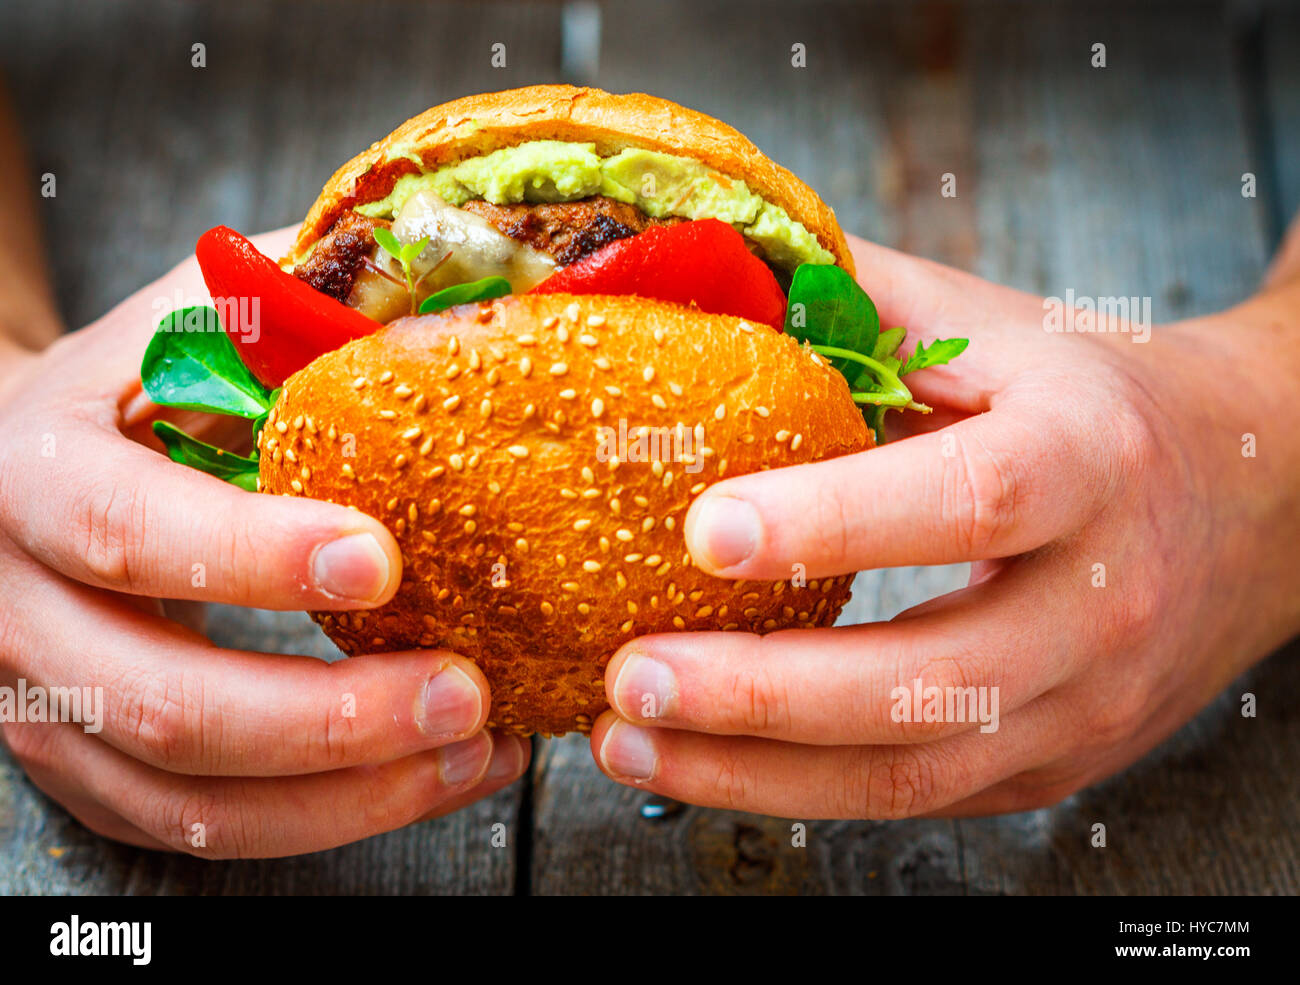 Tasty burger de bœuf grillé avec du fromage, de la guacamole et poivrons marinés entre les mains de l'homme. Banque D'Images